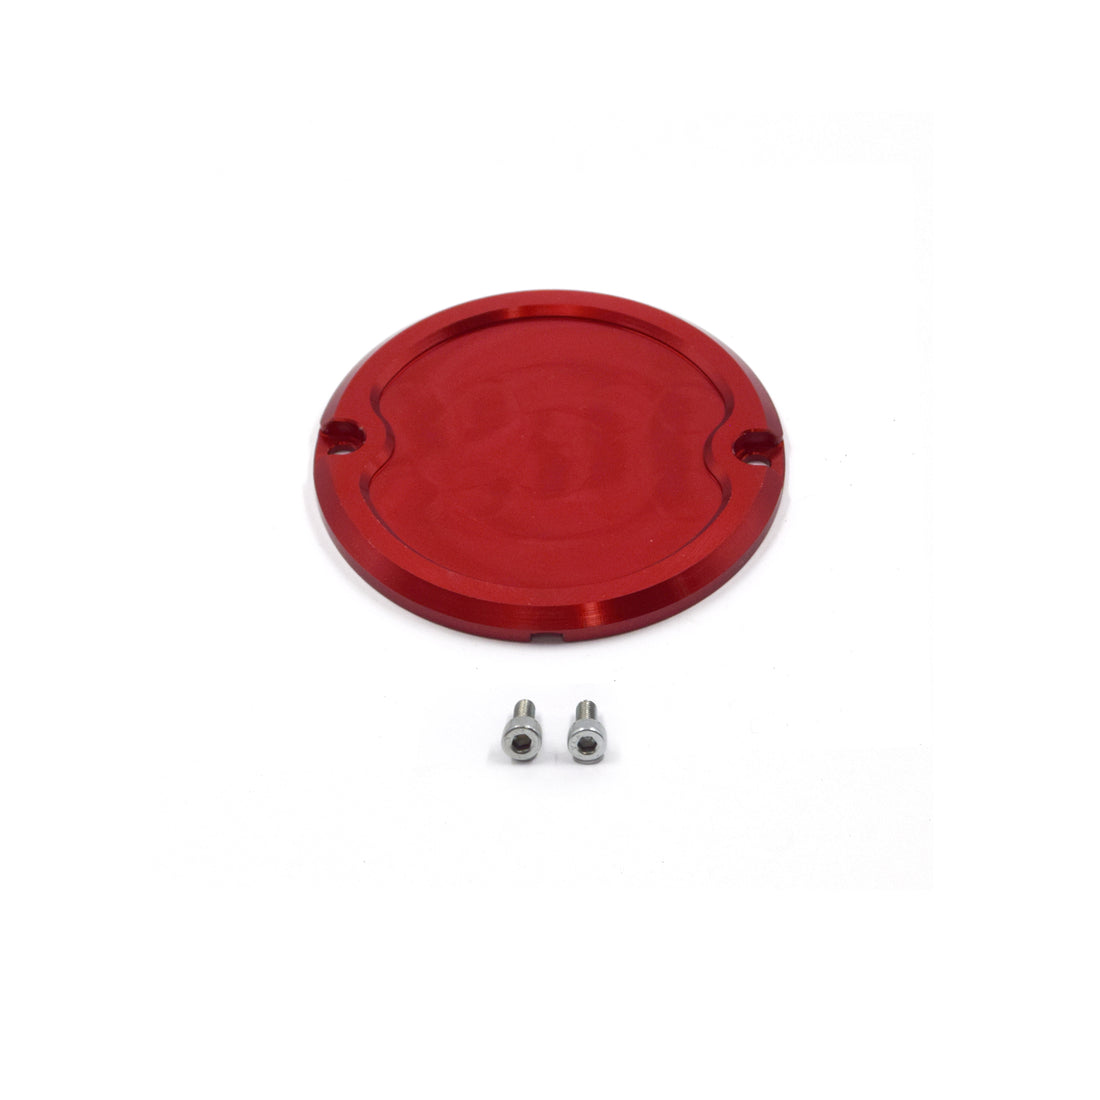 Crank Angle Sensor Cover for Mazda 13B Engines